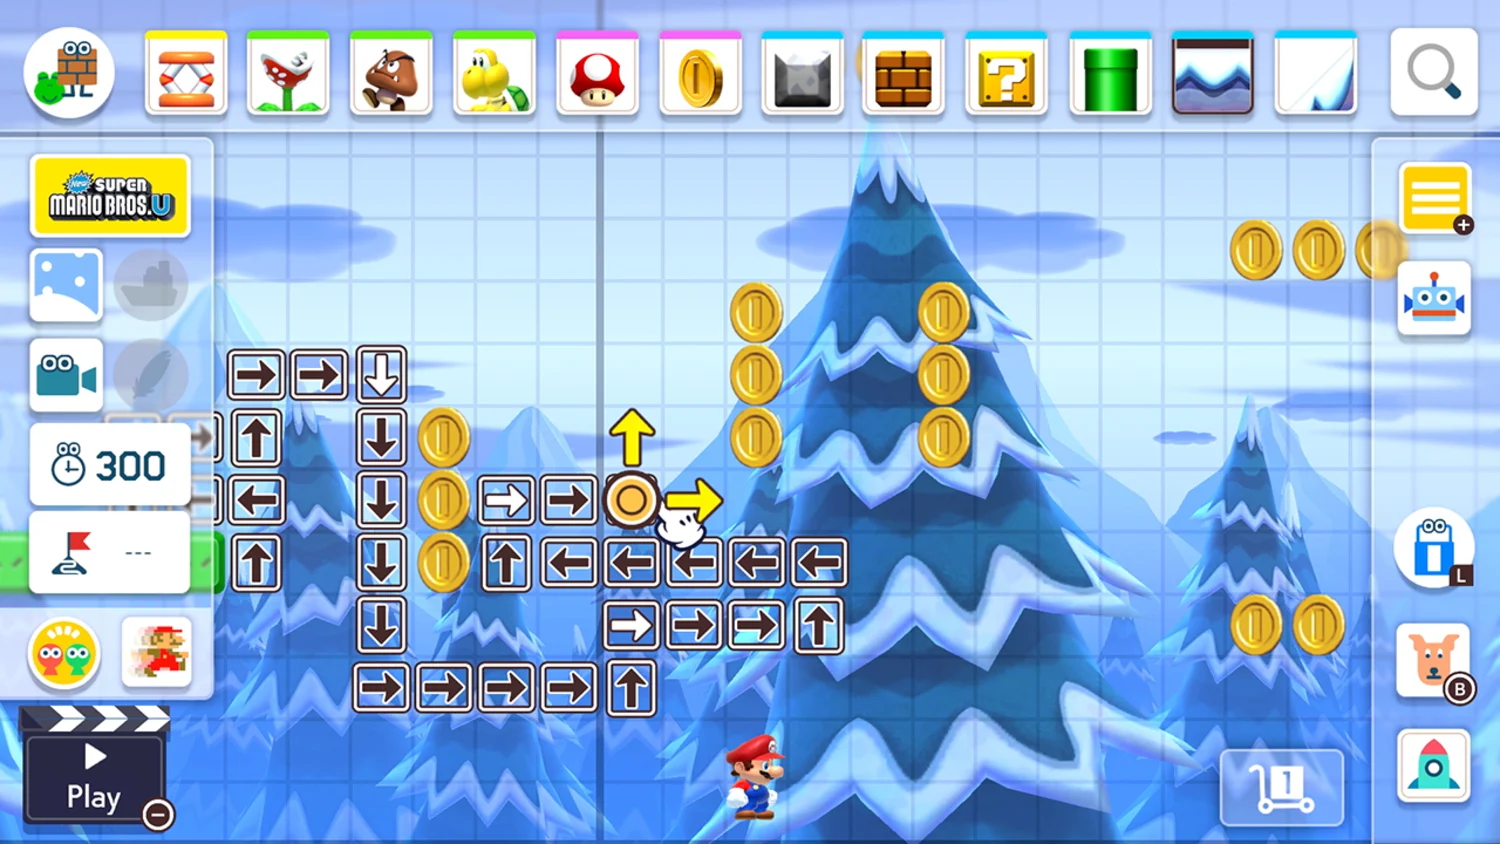 Jogo Super Mario Maker 2 Nintendo Switch